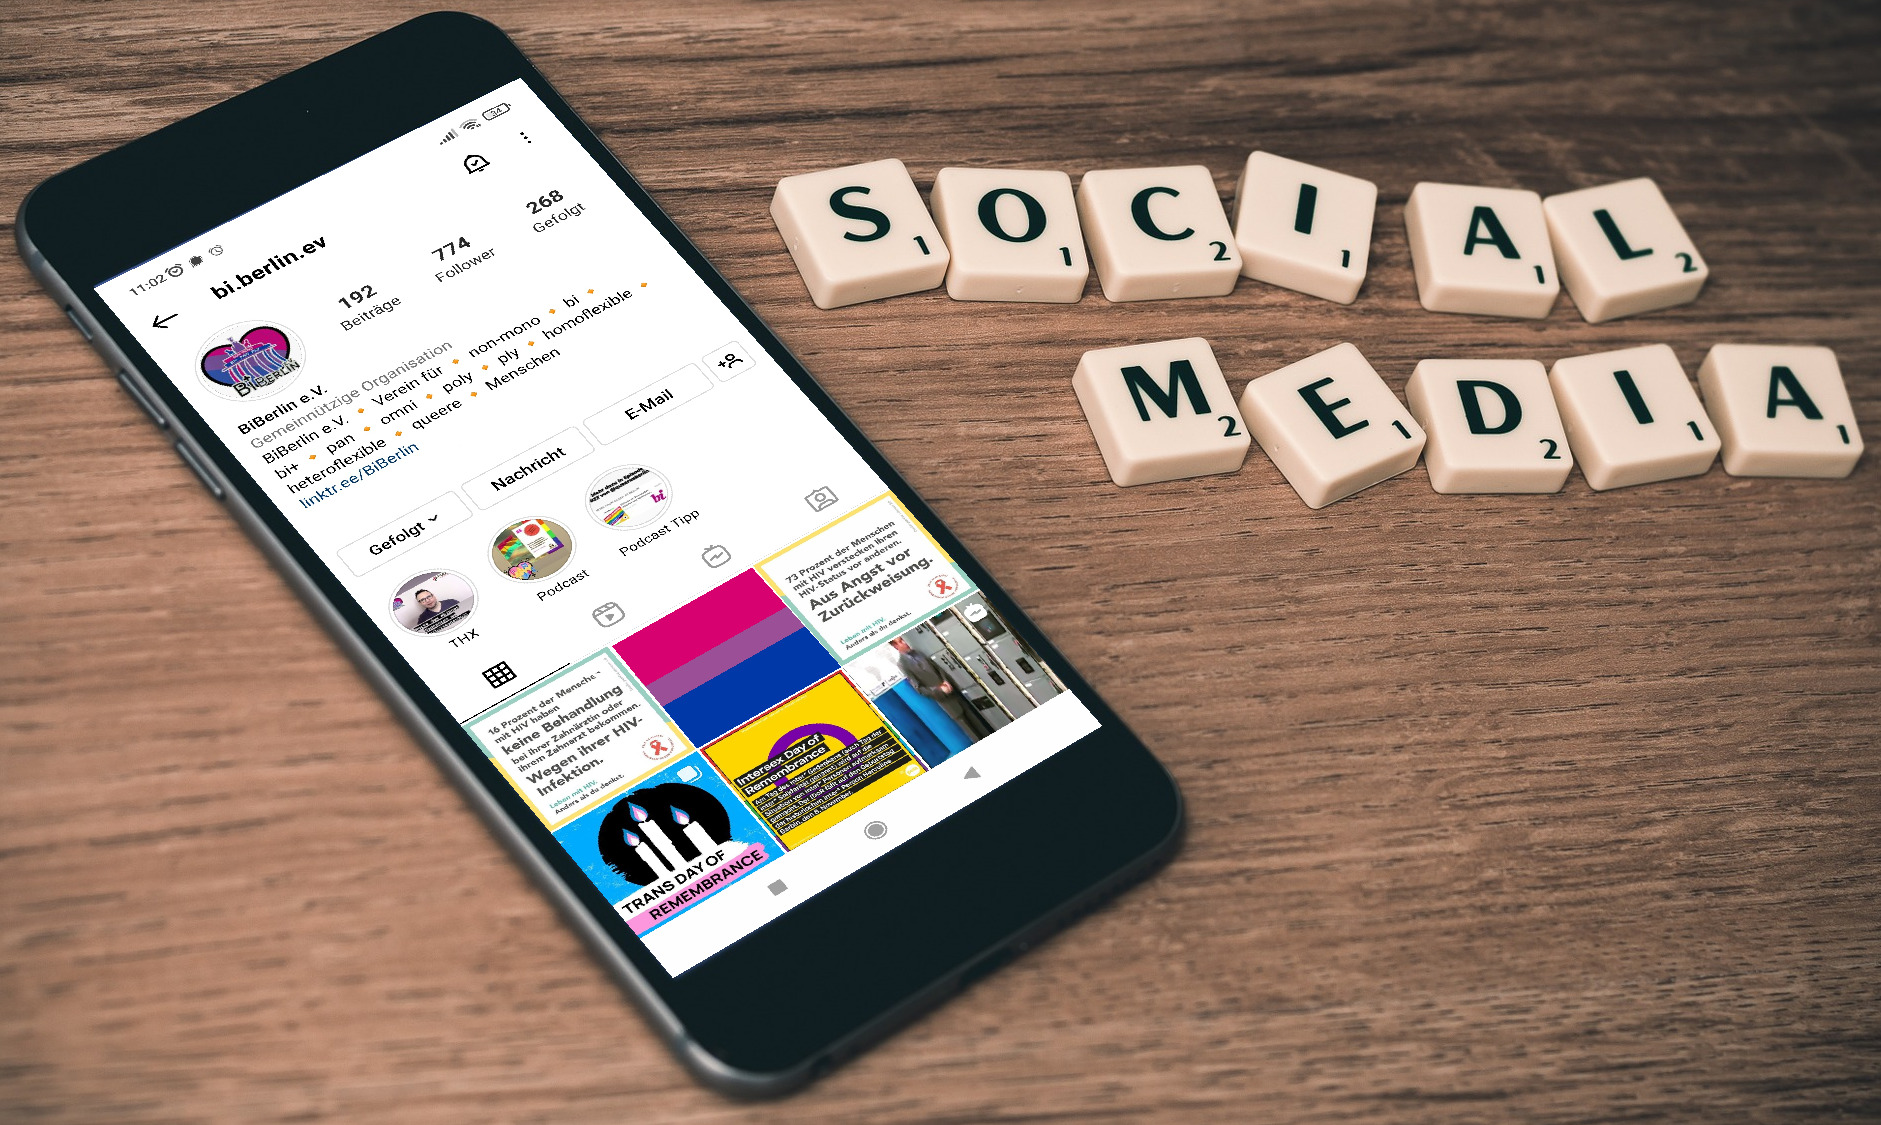 Foto mit Smartphone, auf dem das Instagram-Profil von BiBerlin geöffnet ist. Daneben liegen Buchstabensteine eines Scrabble-Spiels und bilden die Wörter "Social Media"